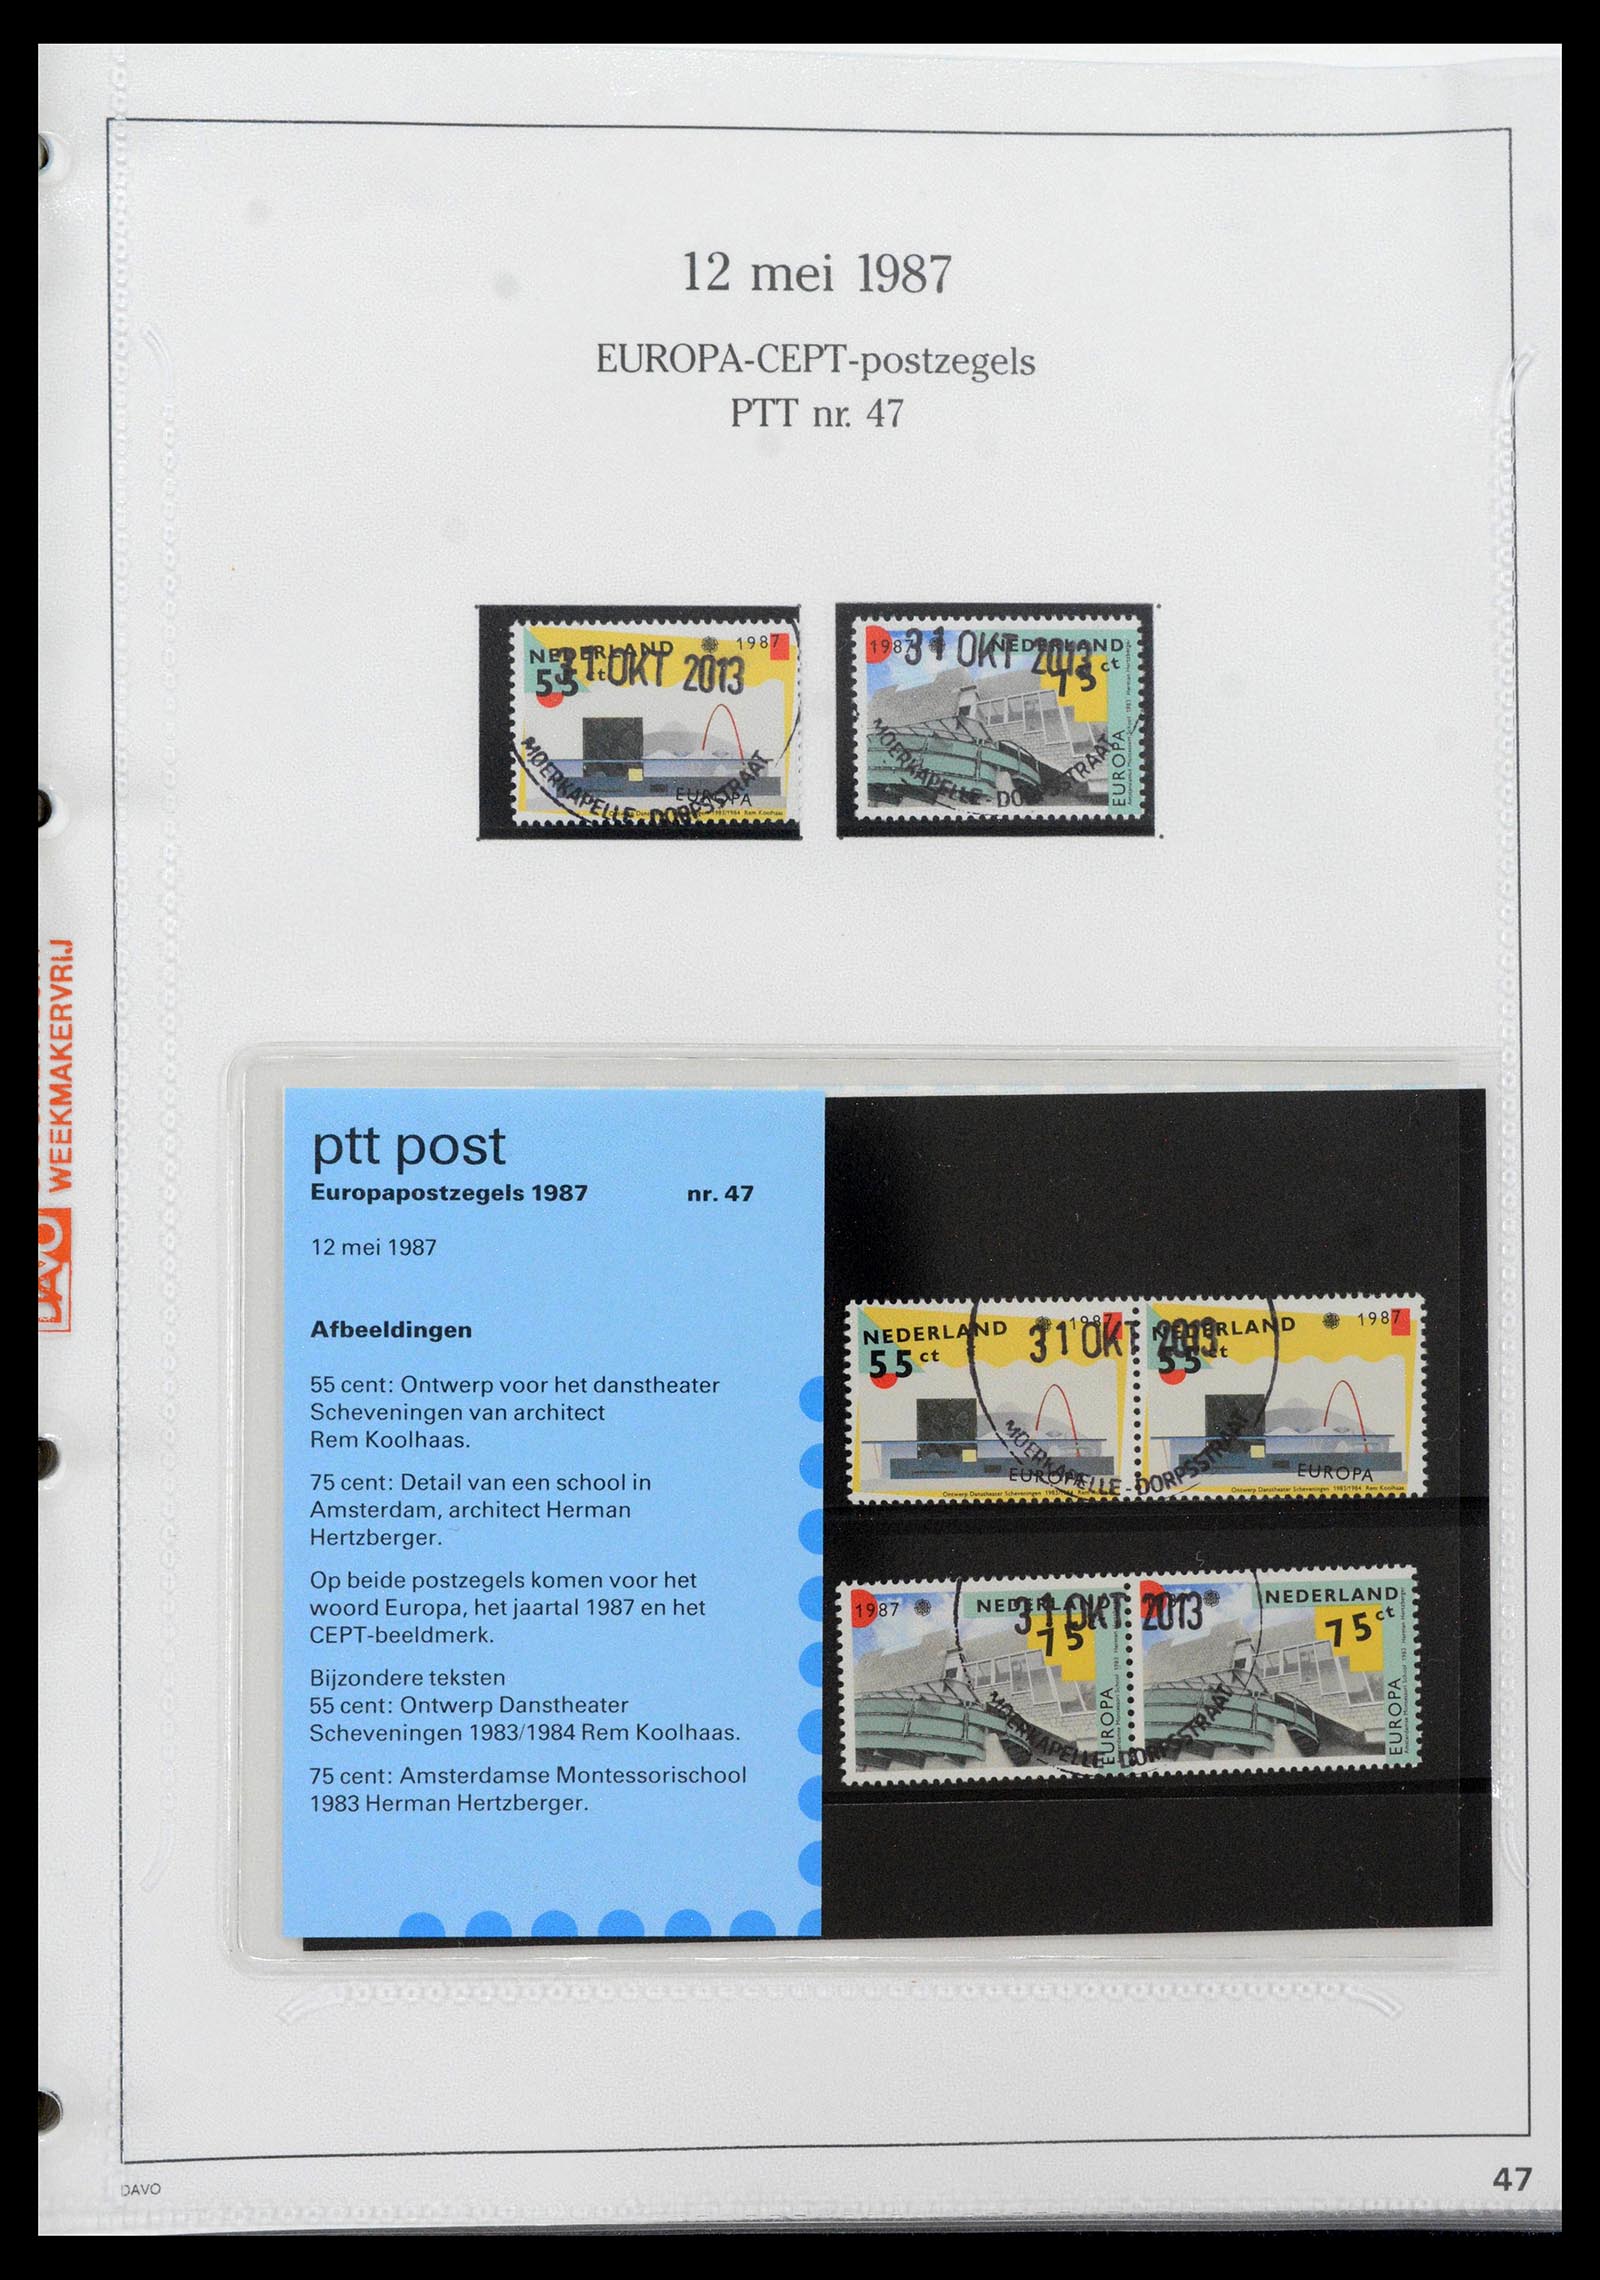 39121 0047 - Stamp collection 39121 Netherlands presentationpacks 1982-2001.